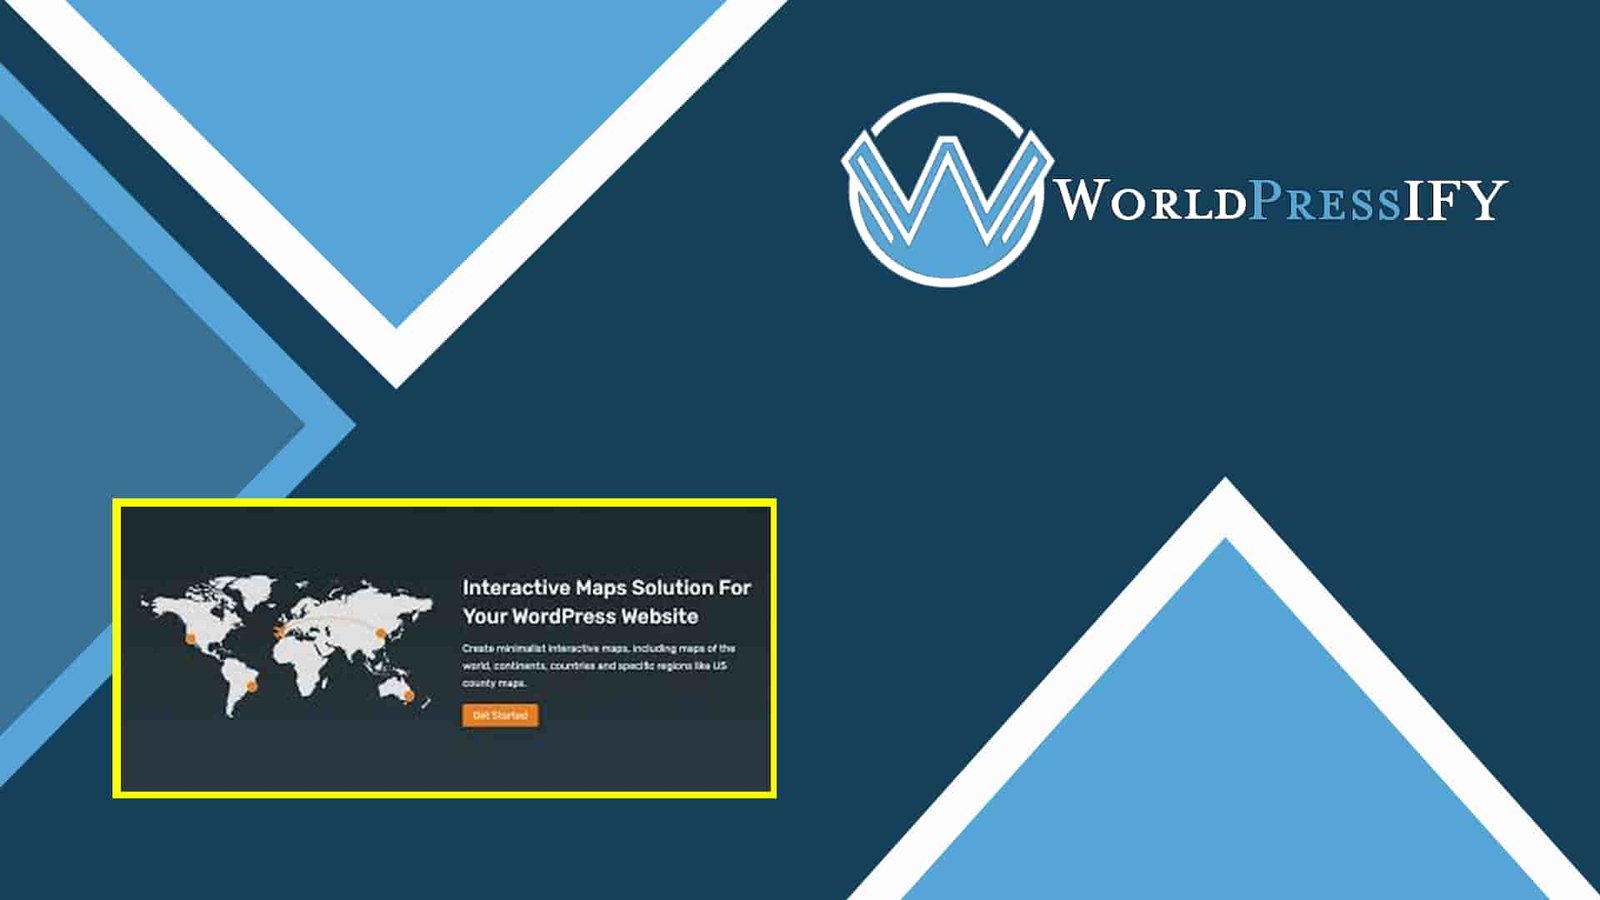 Interactive World Maps - WorldPress IFY